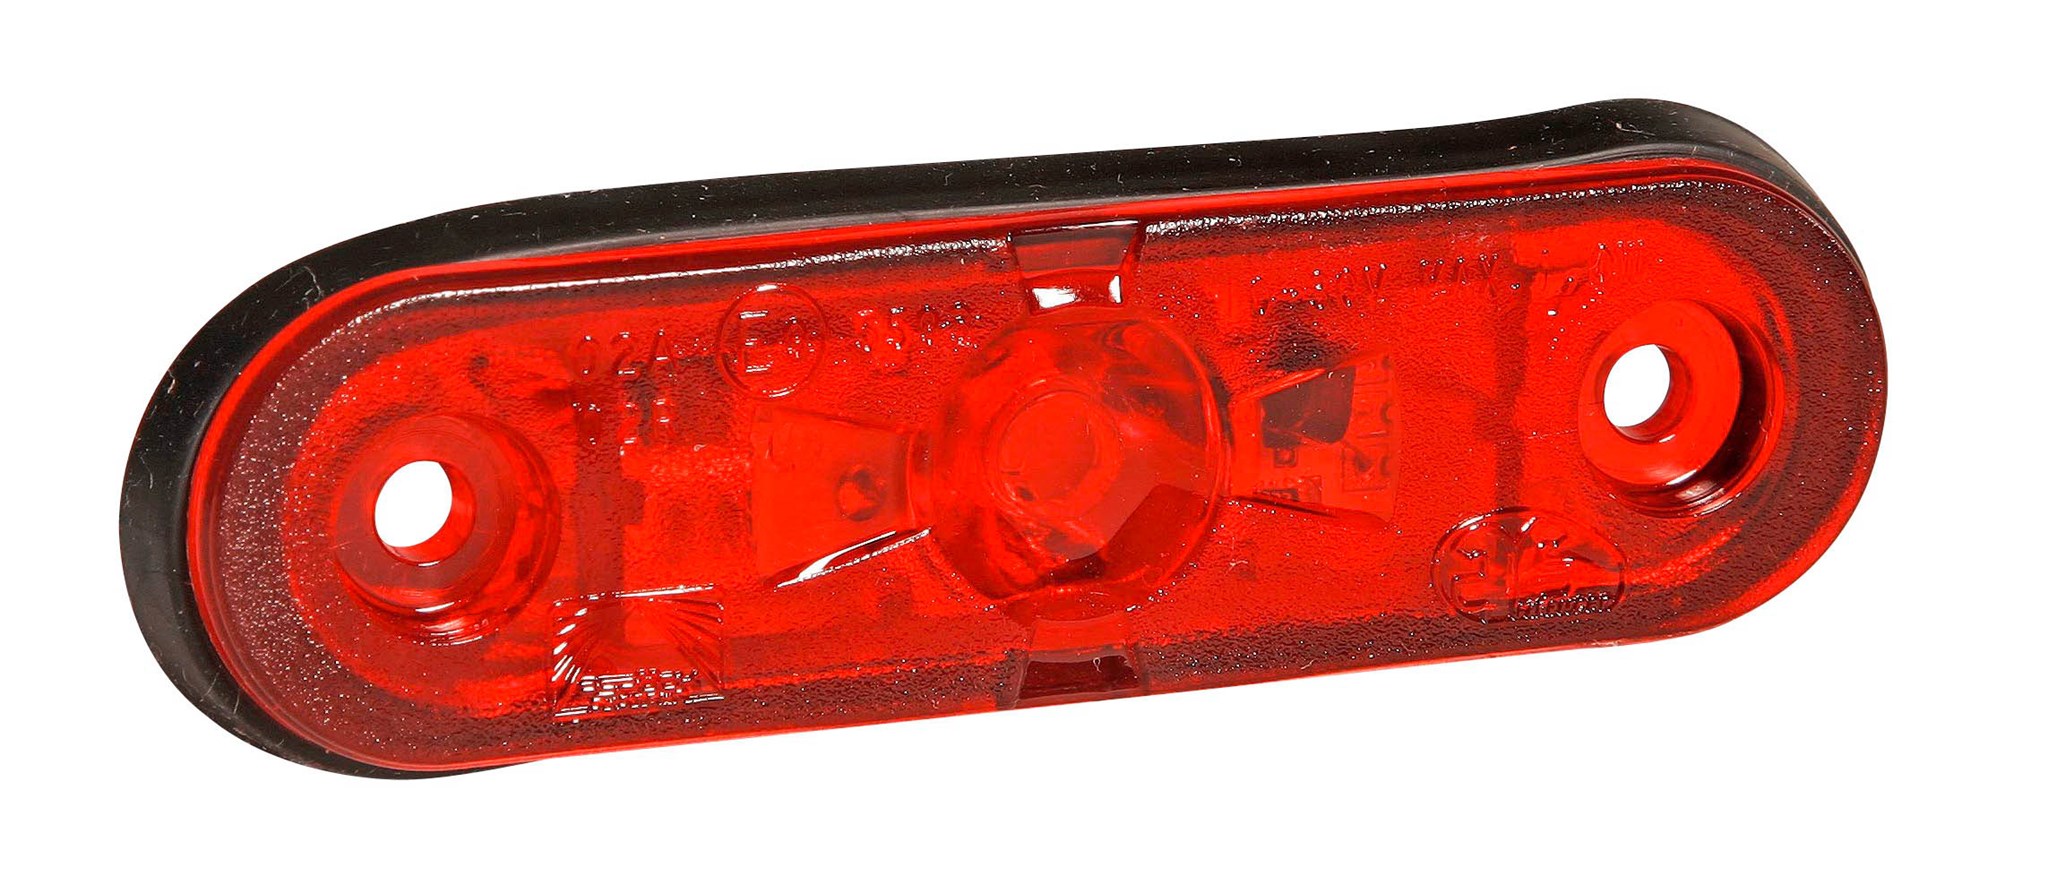 Bild von 31-7200-094 Aspöck Posipoint II rot LED  750mm open end 2x0,5mm²